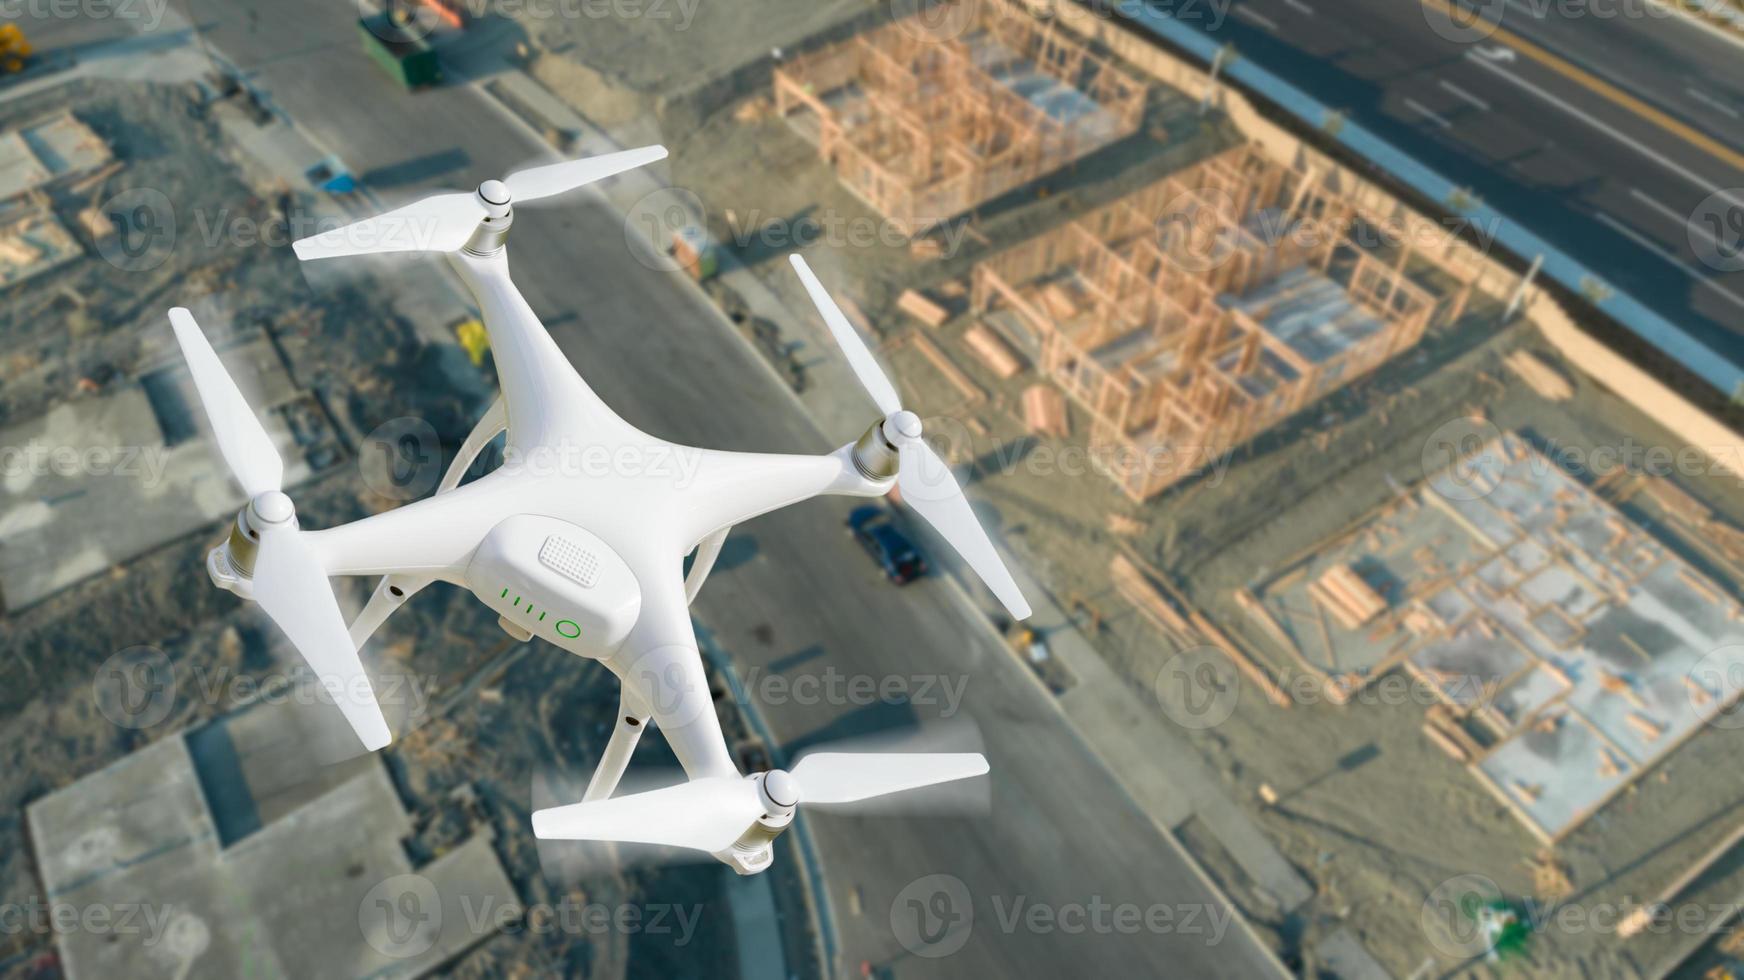 obemannad flygplan systemet uav quadcopter Drönare i de luft över konstruktion webbplats. foto